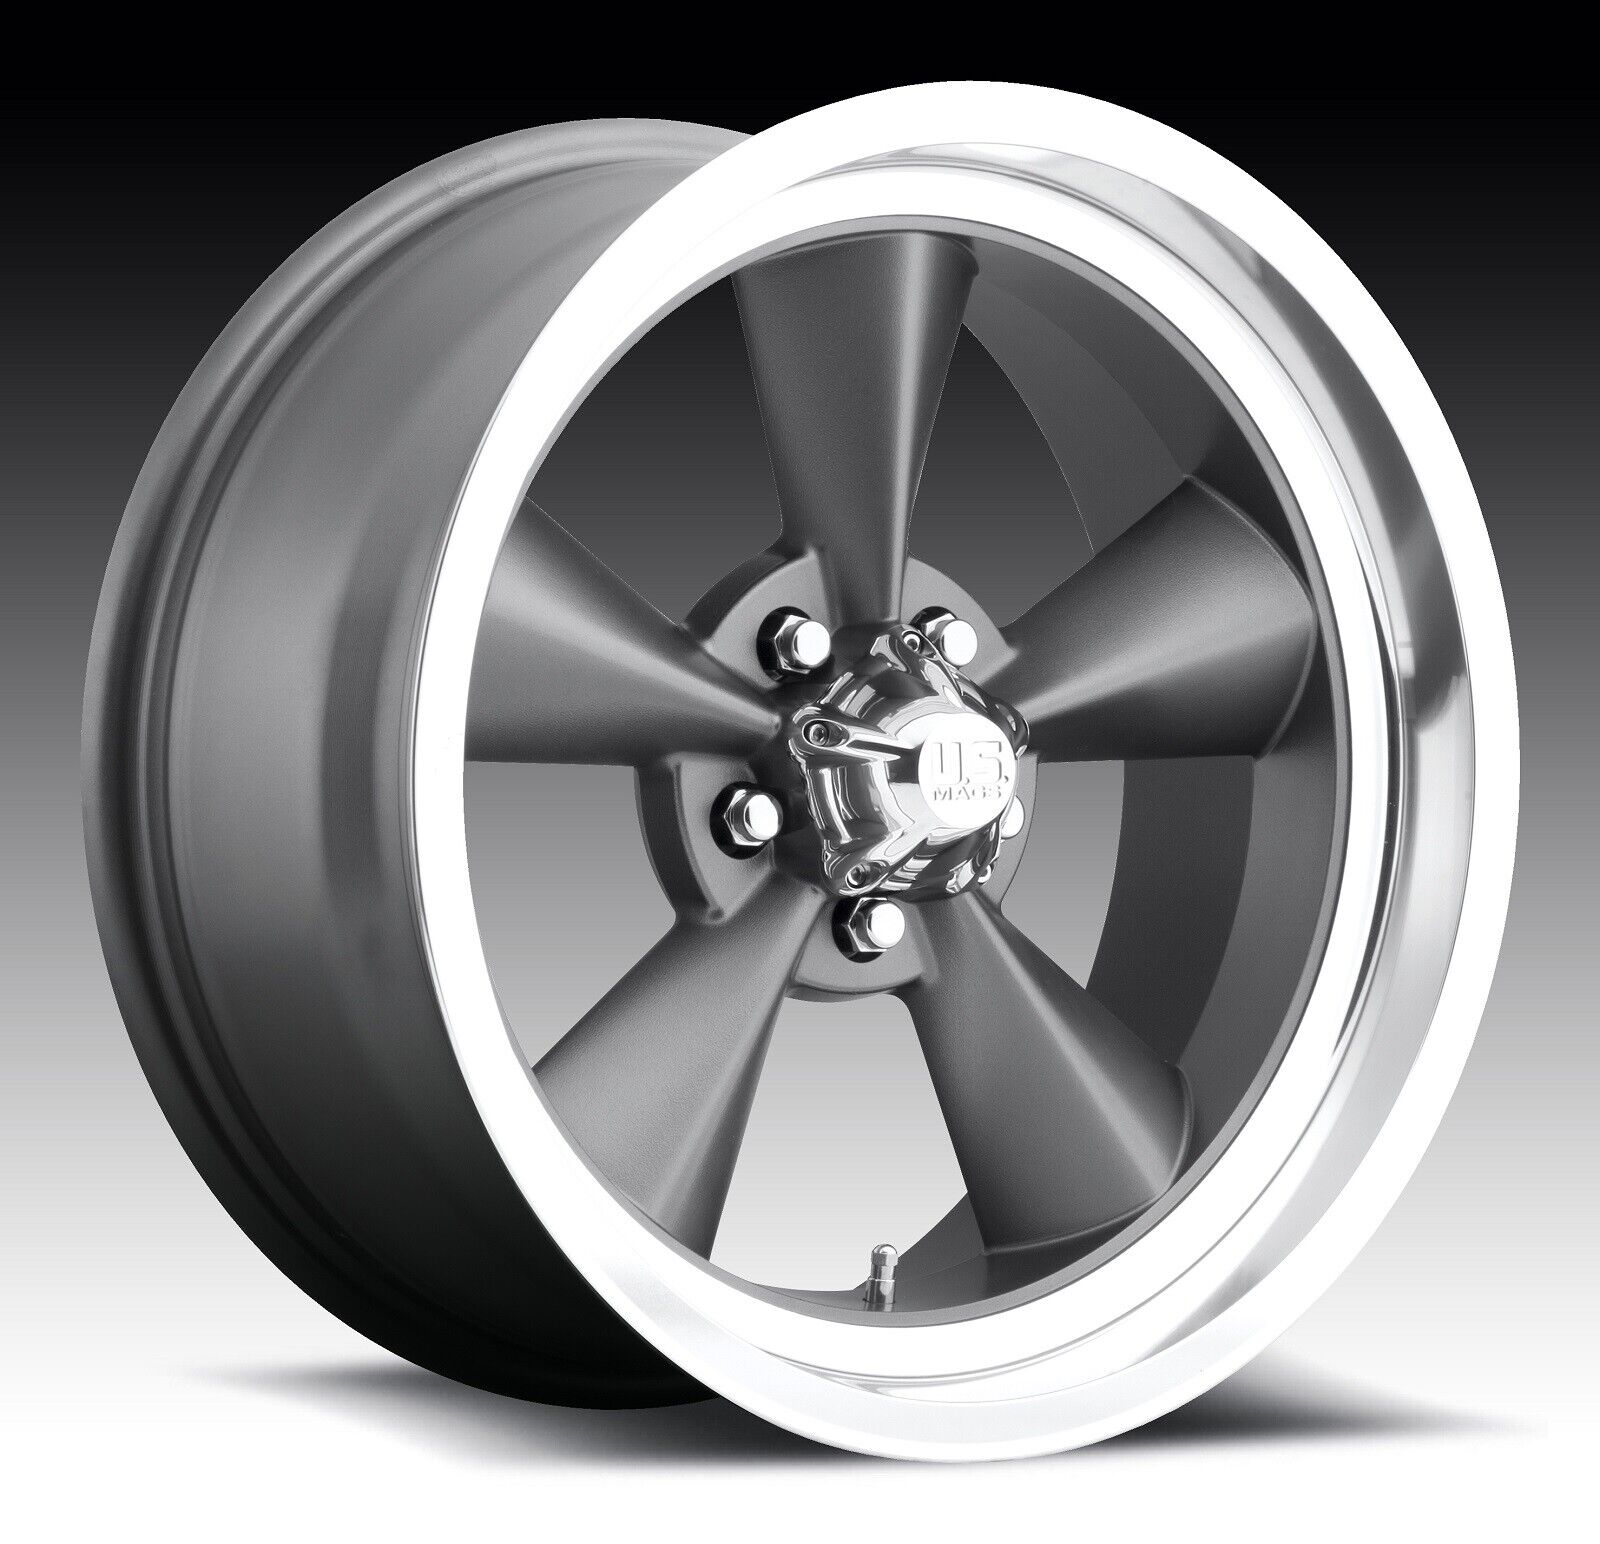 CPP US Mags U102 Standard wheels 17x8 + 18x8 fits: PONTIAC FIREBIRD TRANS AM TA